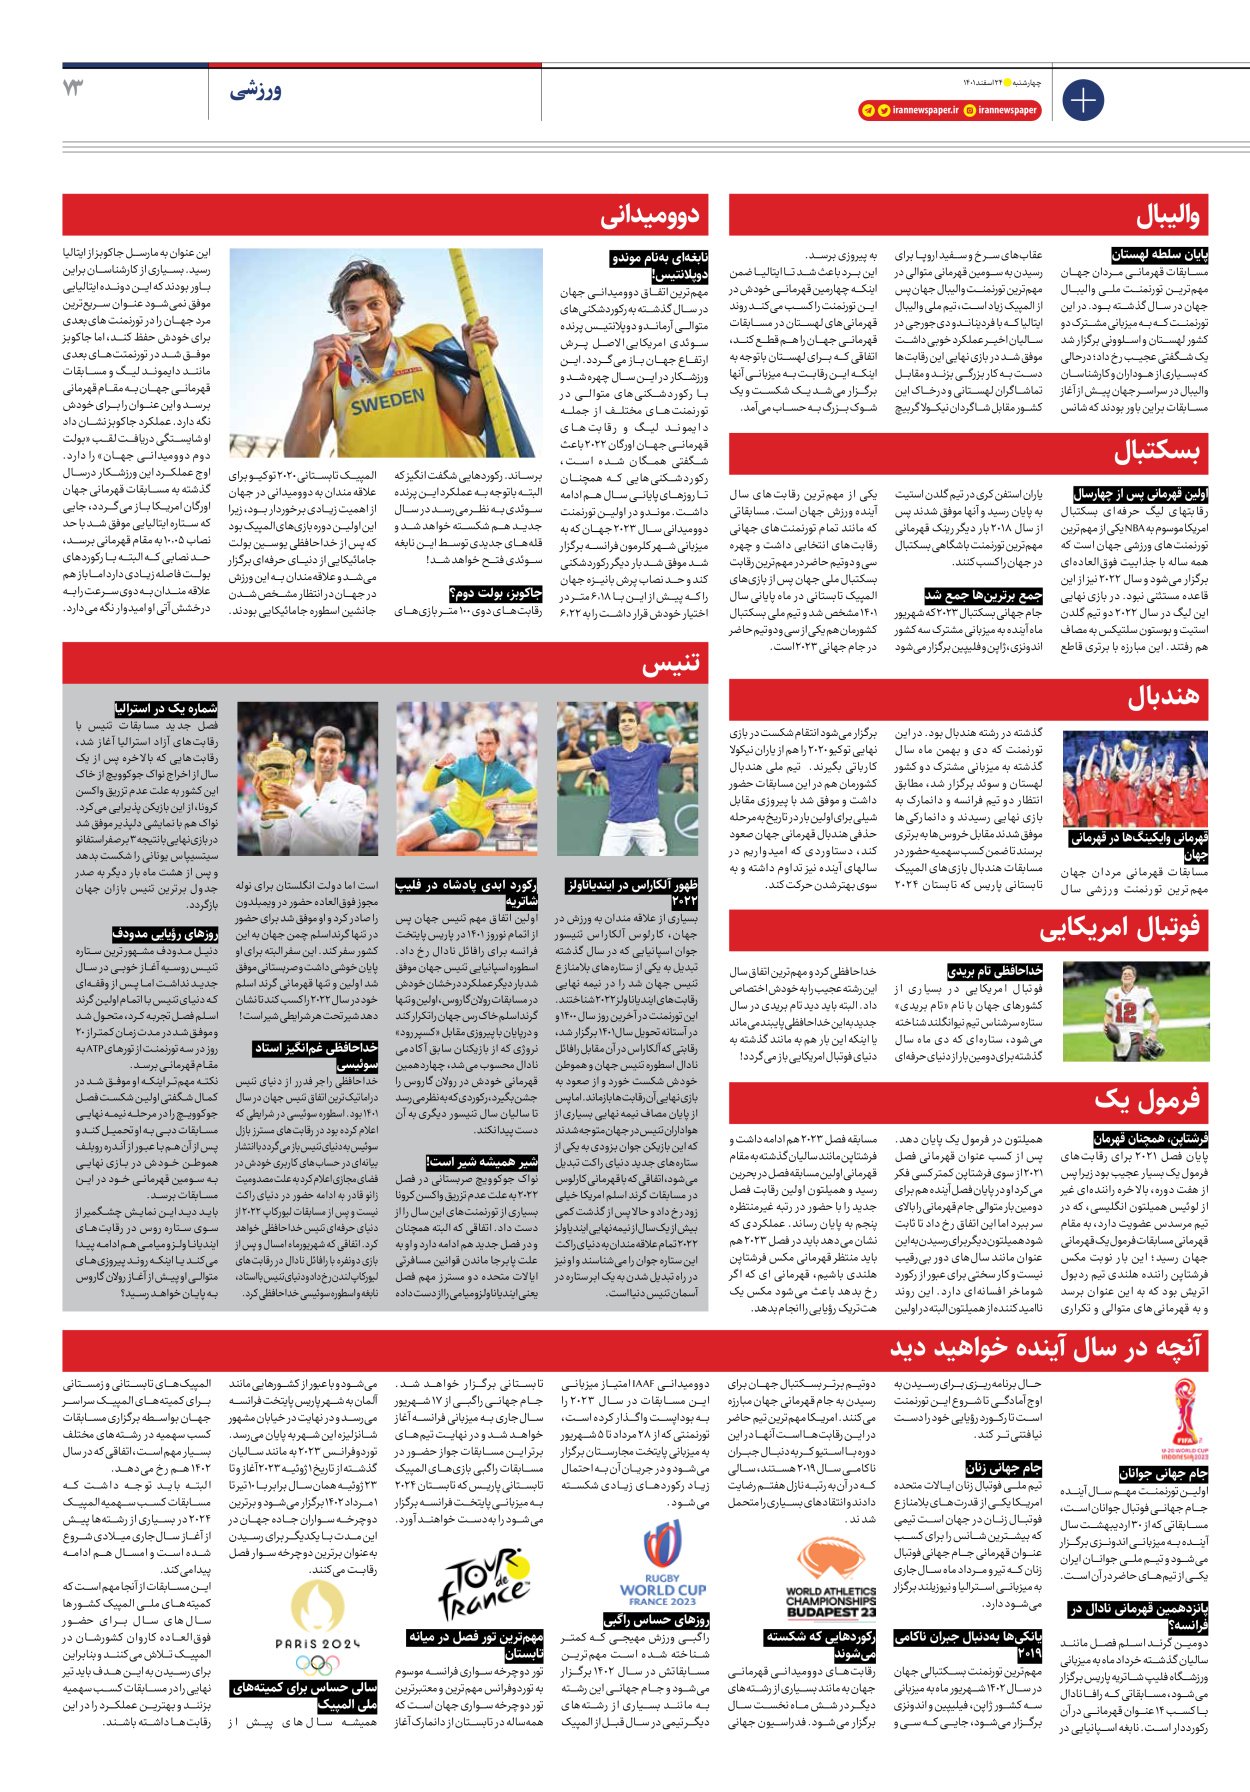 روزنامه ایران - ویژه نامه ویژه نوروز - ۲۴ اسفند ۱۴۰۱ - صفحه ۷۳